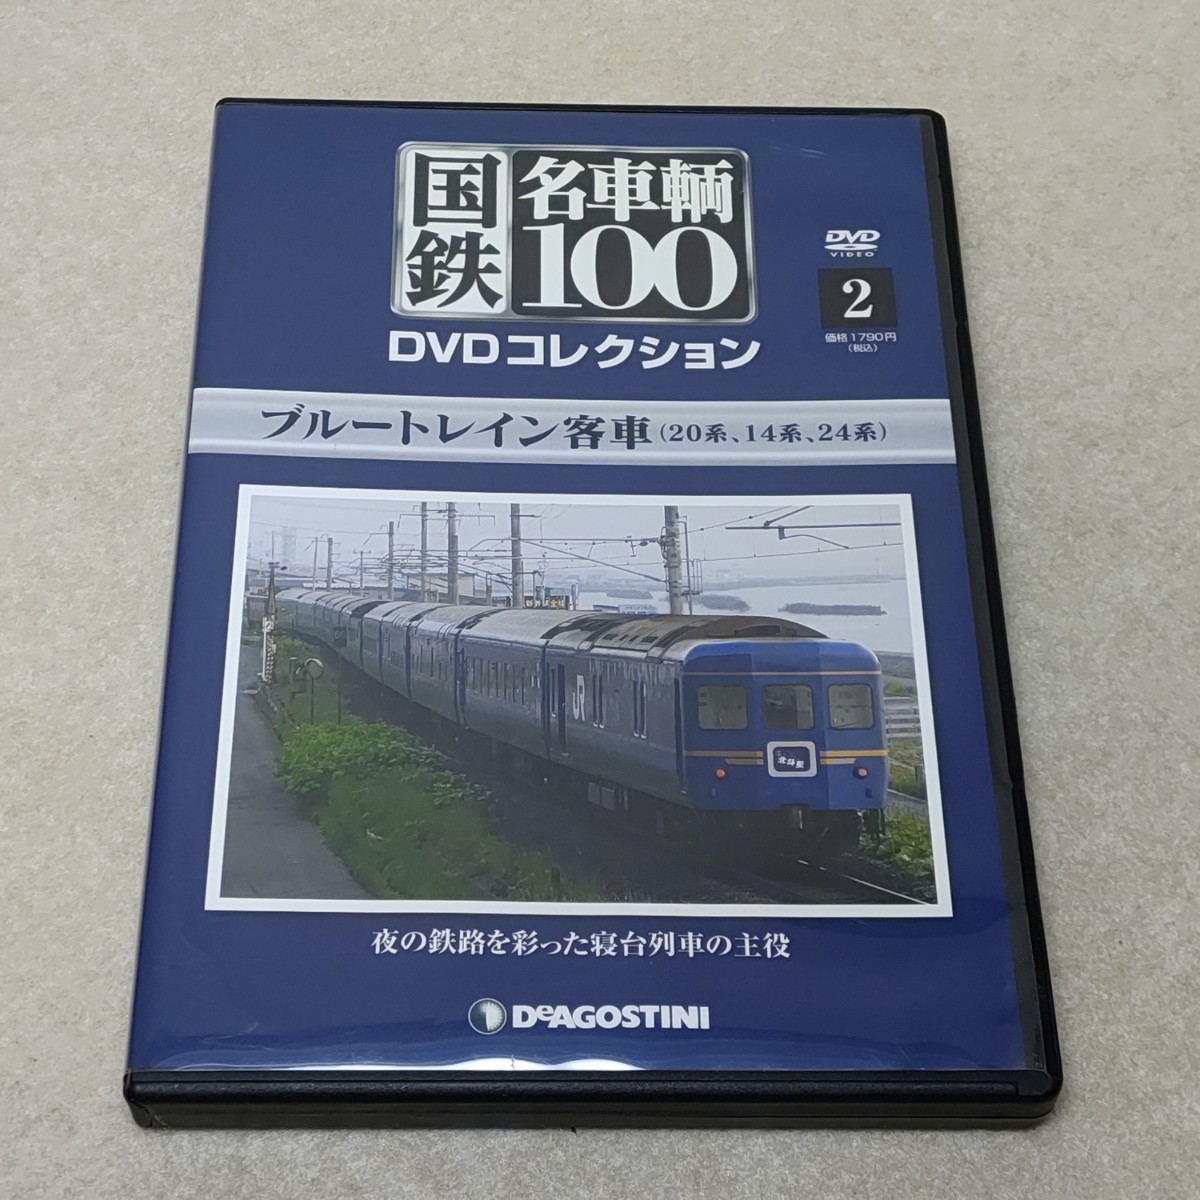 DVD 国鉄 名車輌100 2 ブルートレイン客車 デアゴスティーニ 国鉄 名車両100_画像1